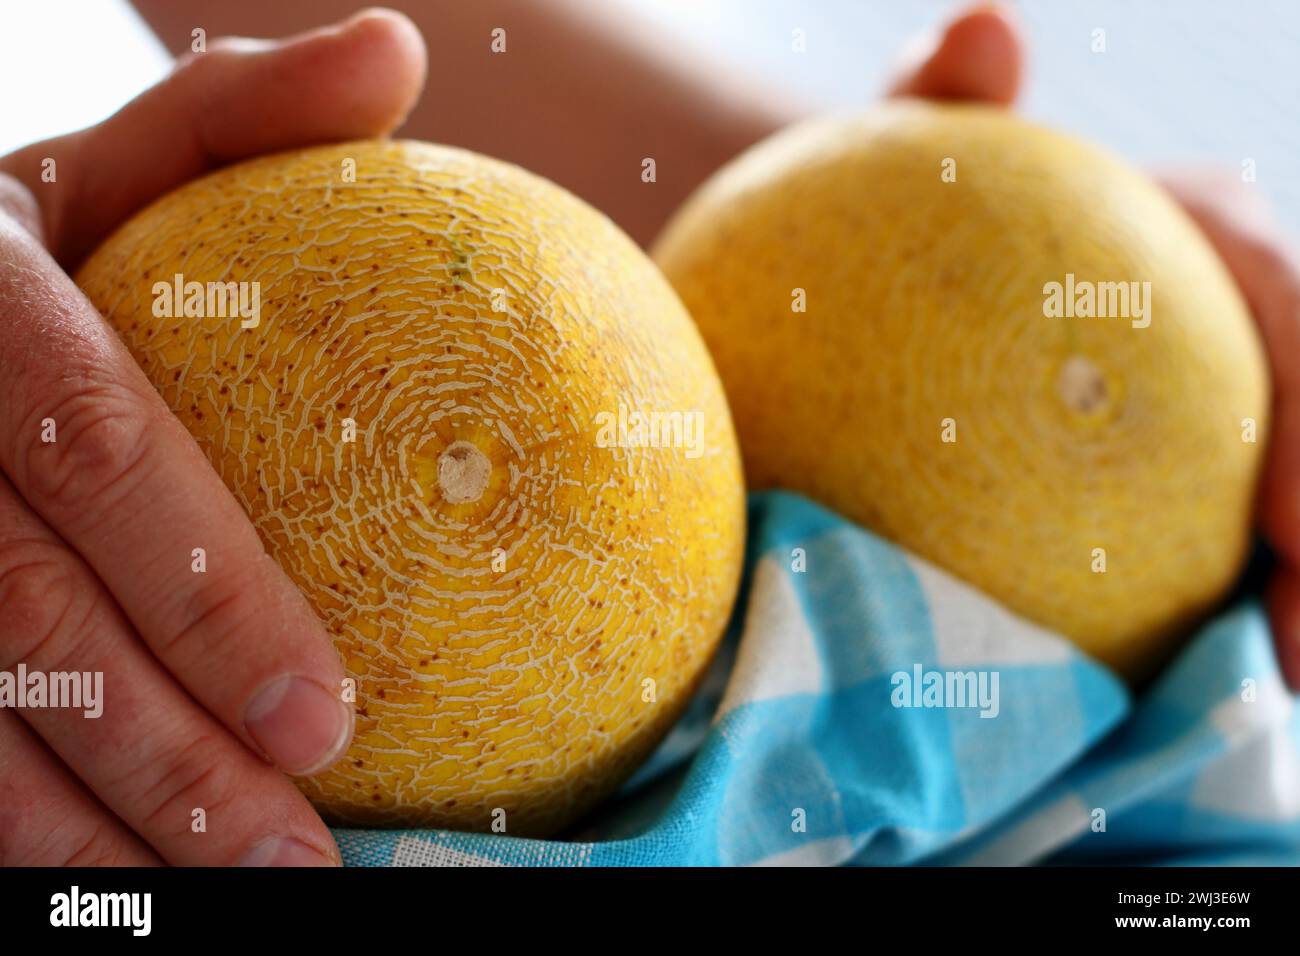 Mains d'hommes tenant deux melon Galia sur serviette de cuisine blanc-bleu Banque D'Images